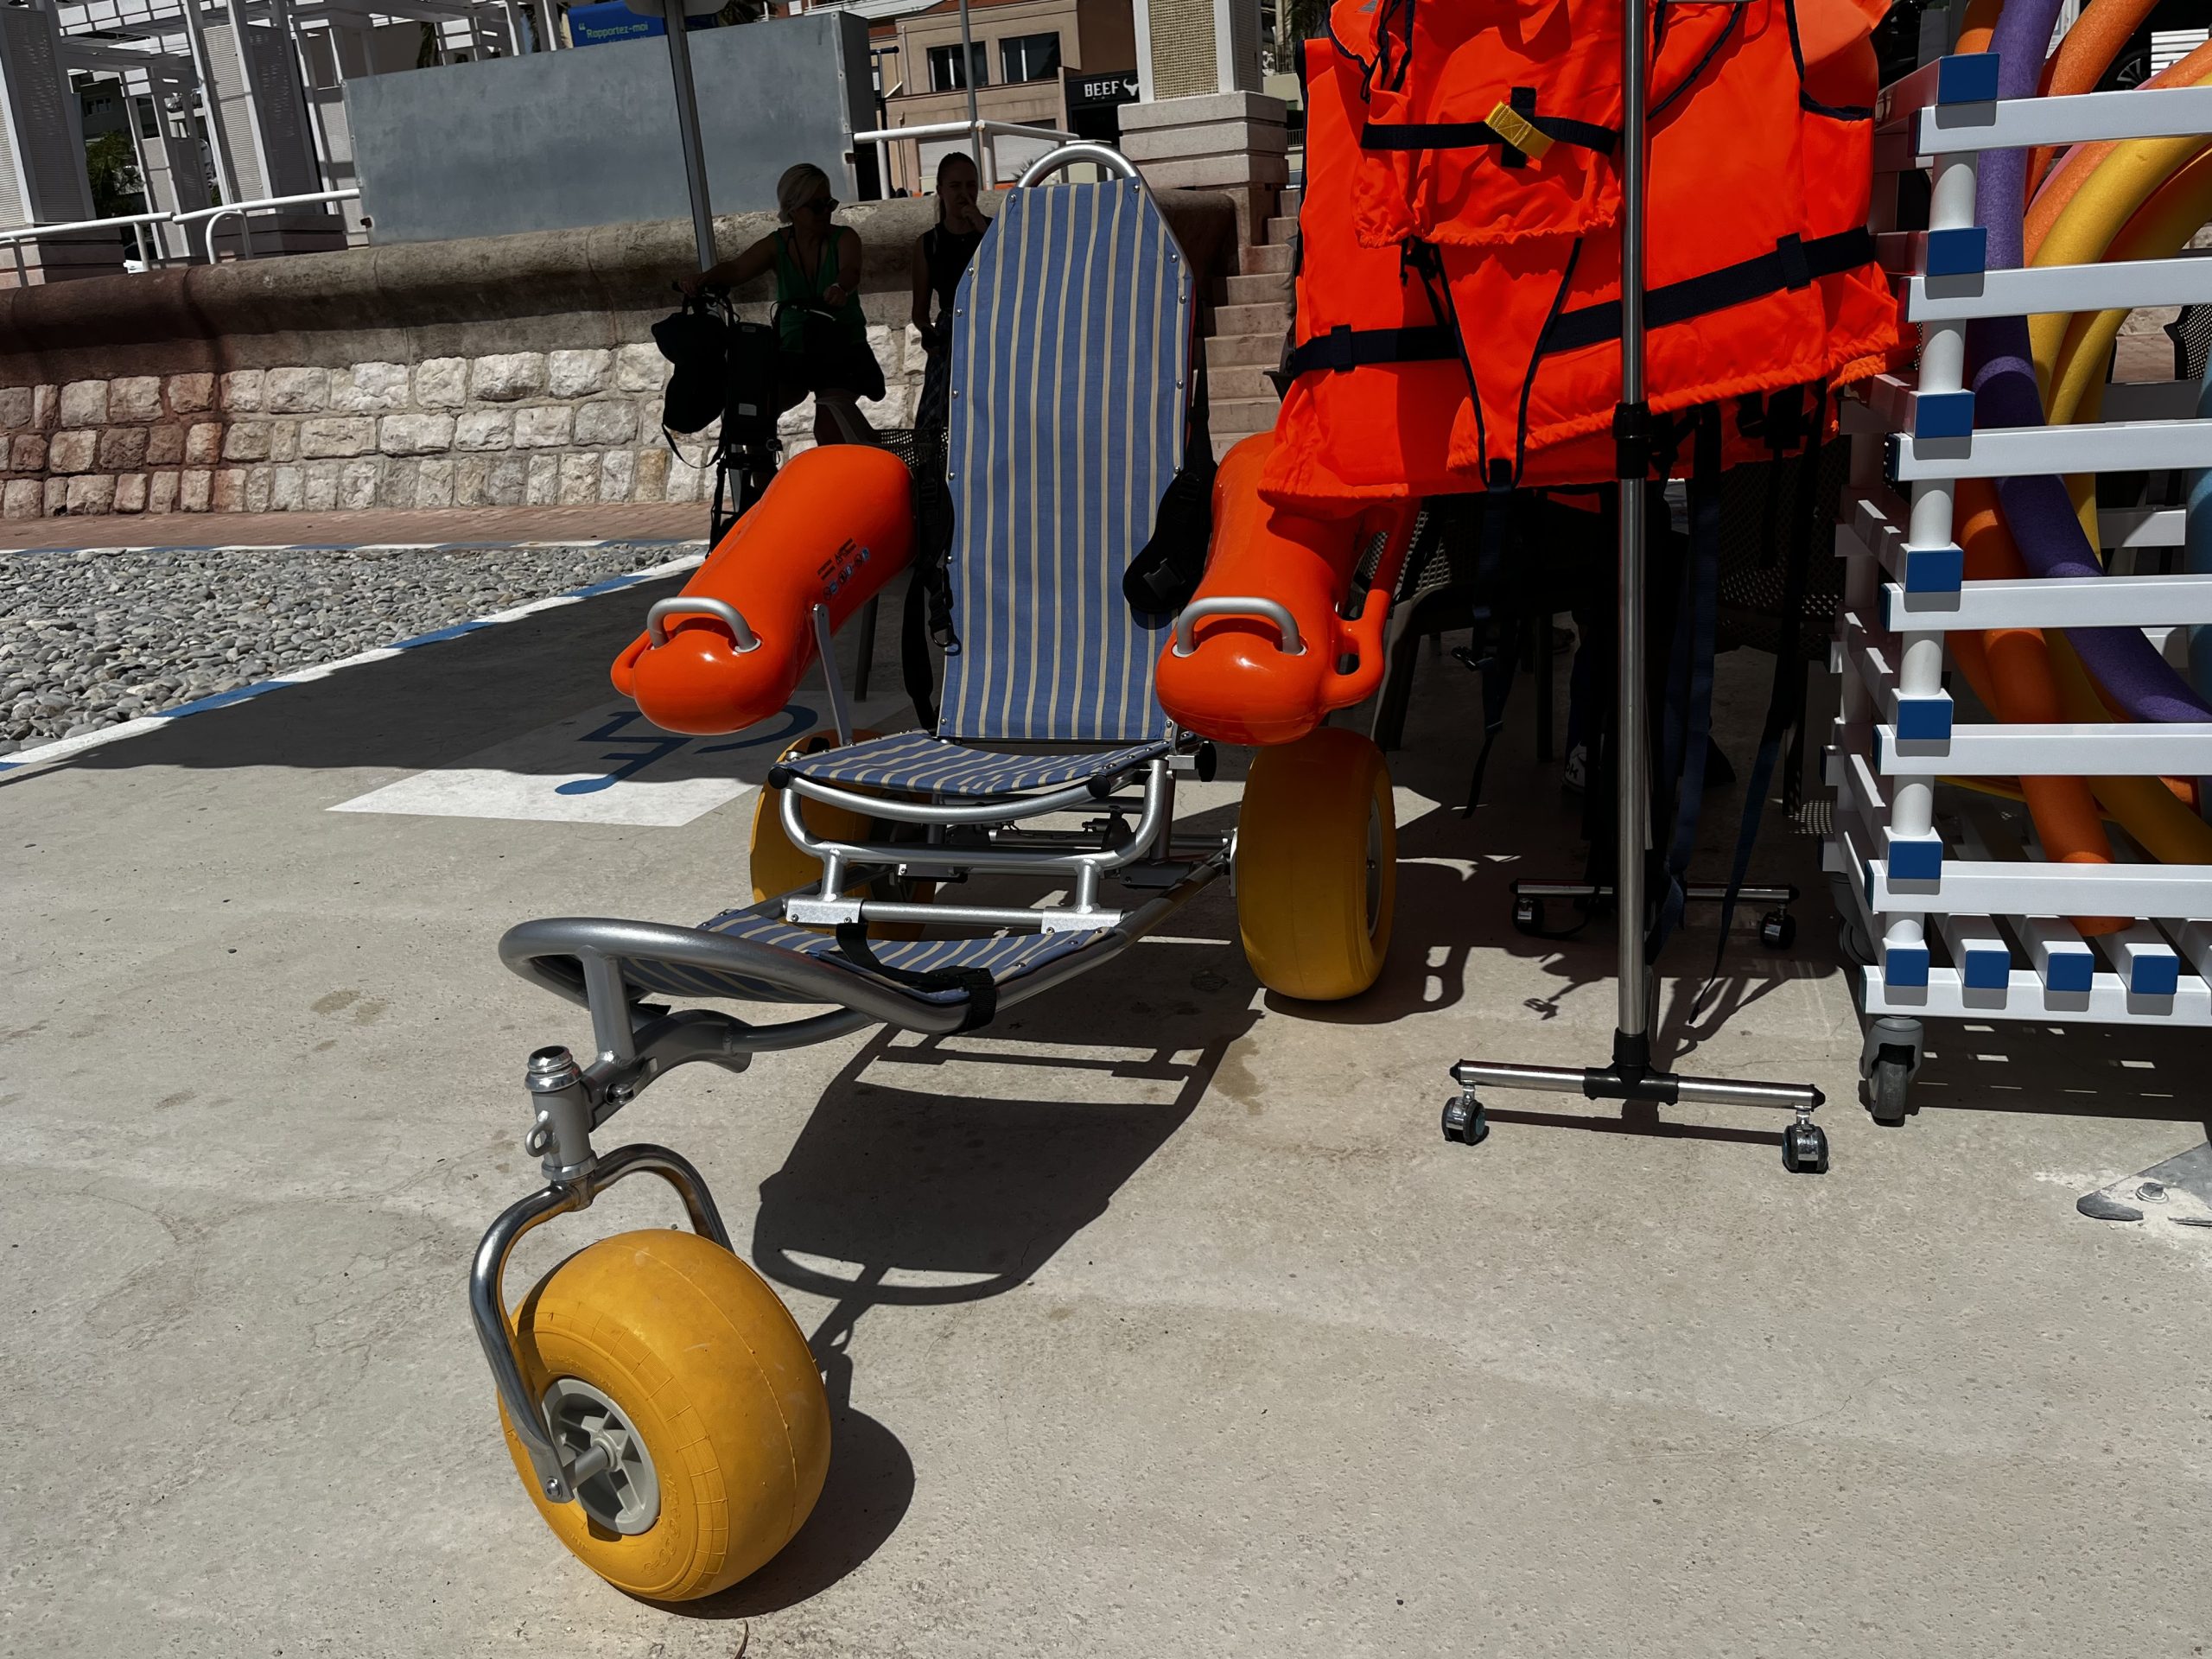 Le dispositif Handiplage est de retour à Nice ! Les deux plages Carras et Centenaire sont désormais prêtes à l'accueil des personnes en situation de handicap. 